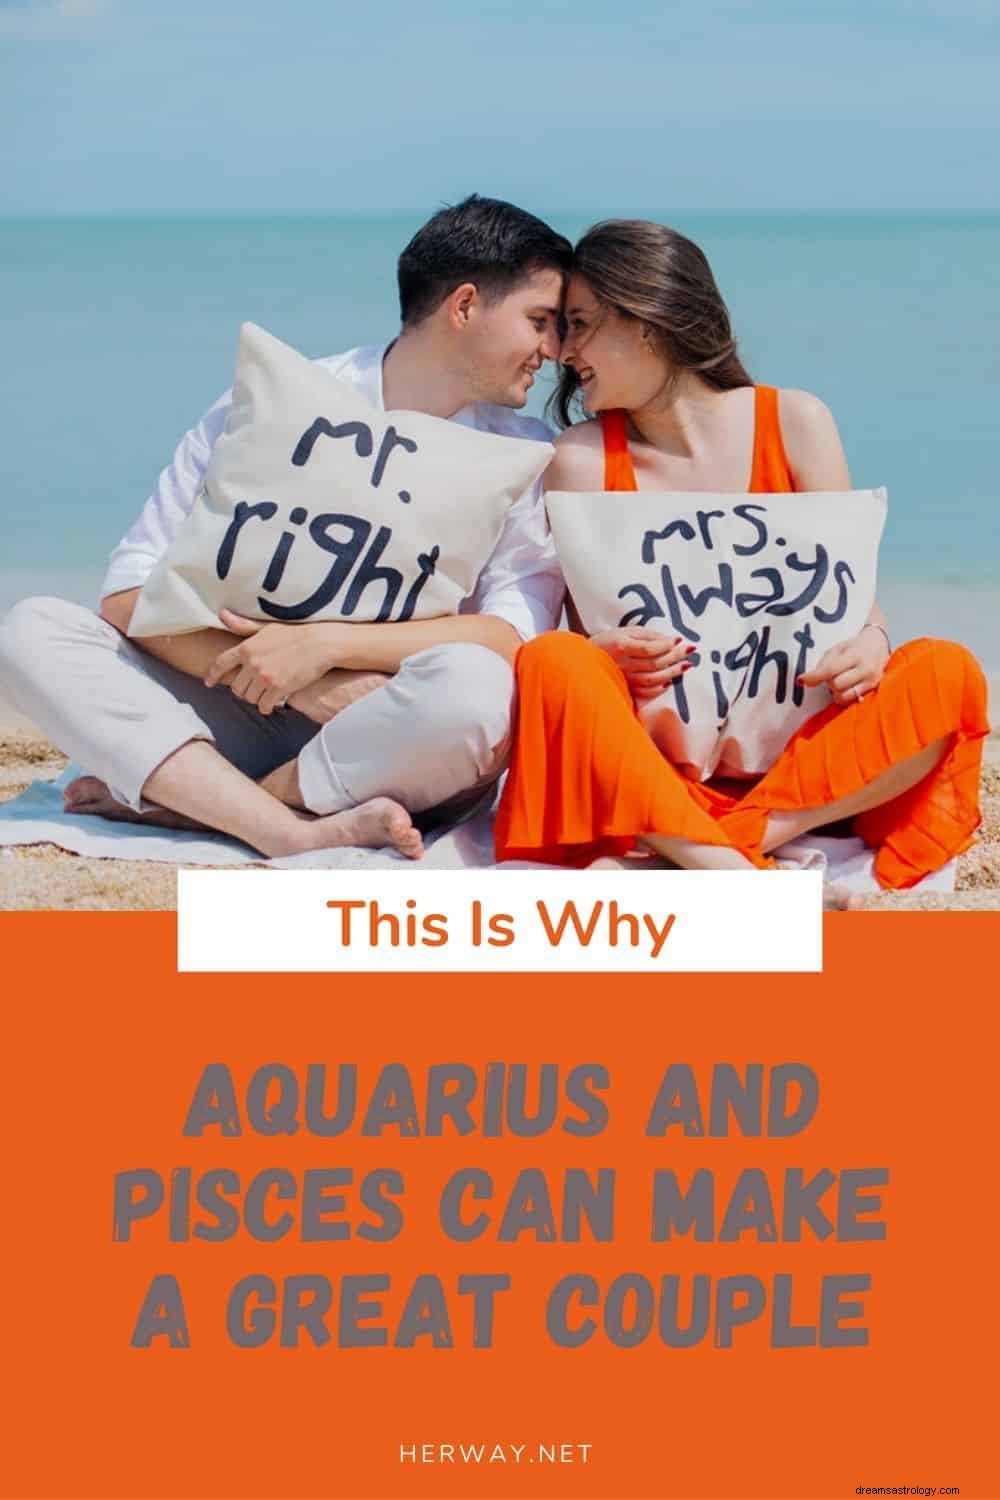 Inilah Mengapa Aquarius dan Pisces Bisa Menjadi Pasangan yang Hebat